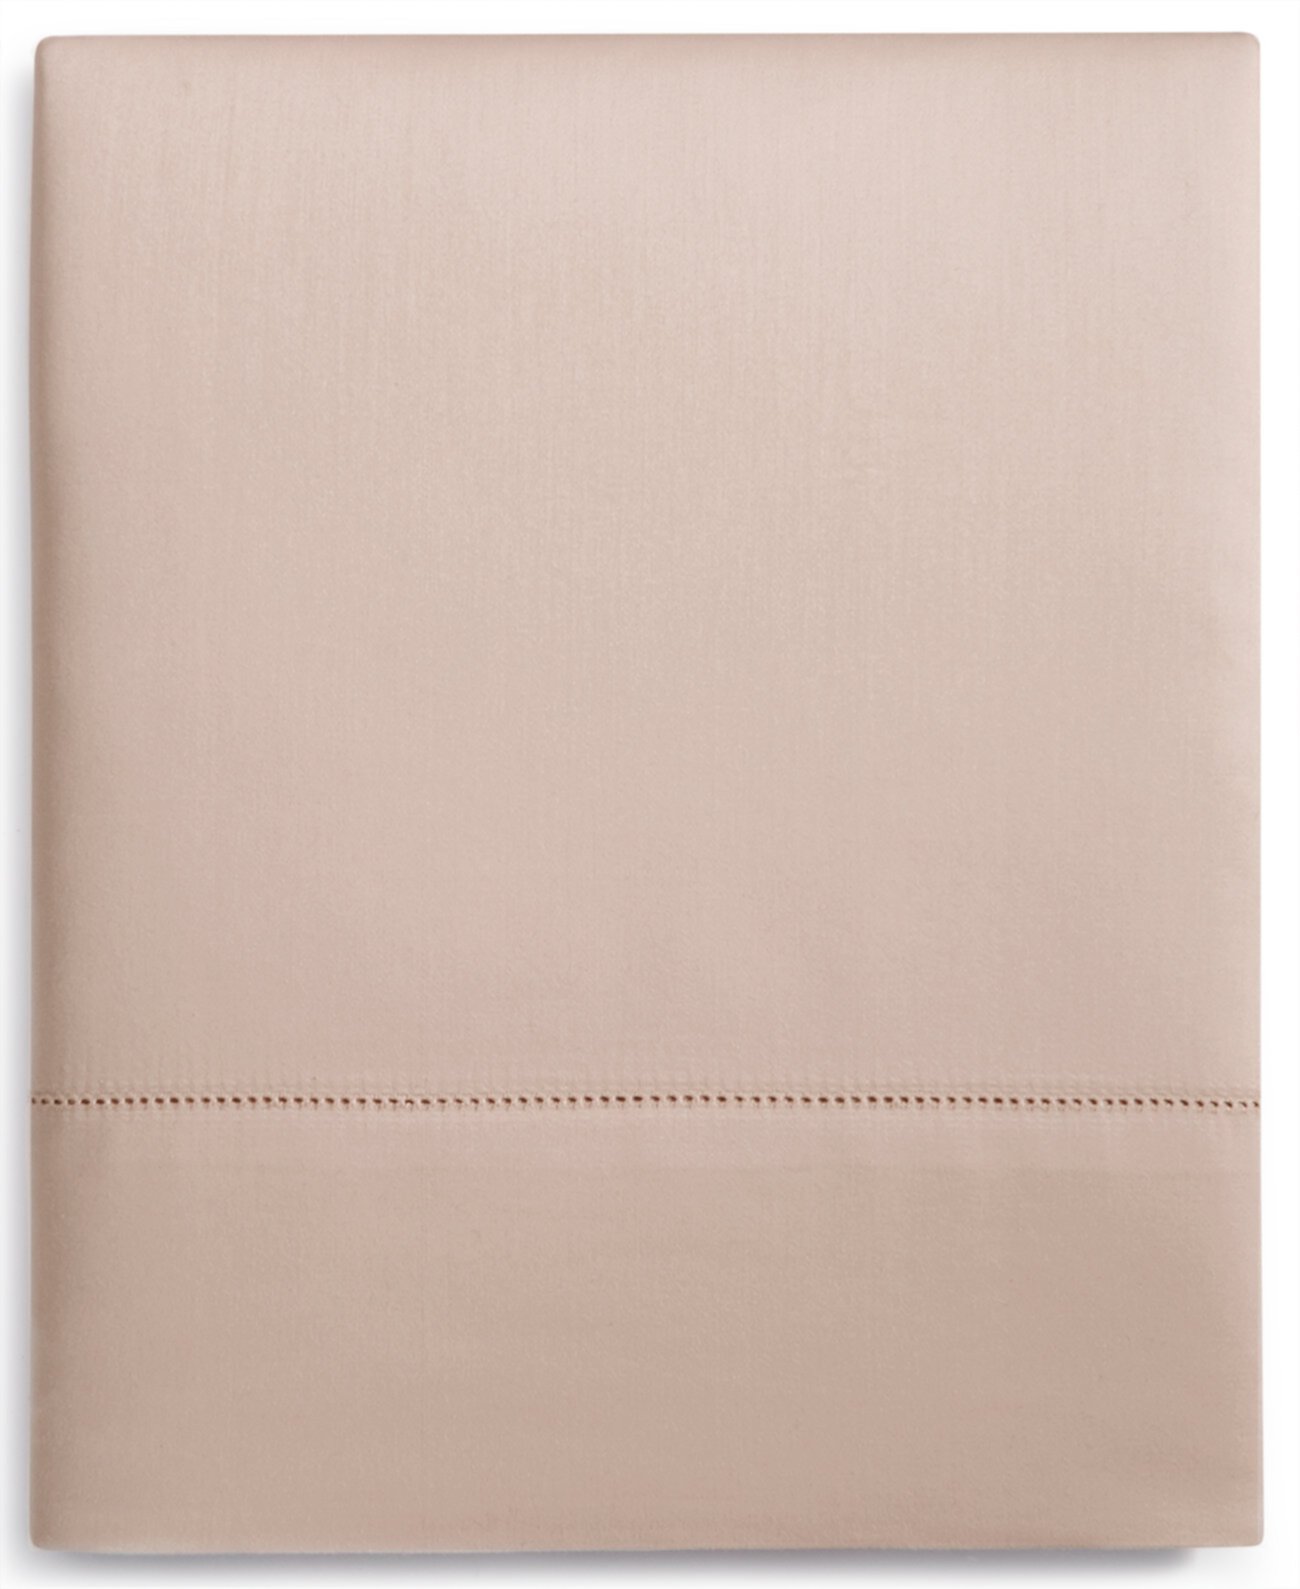 ЗАВЕРШЕНИЕ! Плоская простыня из 100% хлопка Supima плотностью 680 нитей, двойная, создана для Macy's Hotel Collection